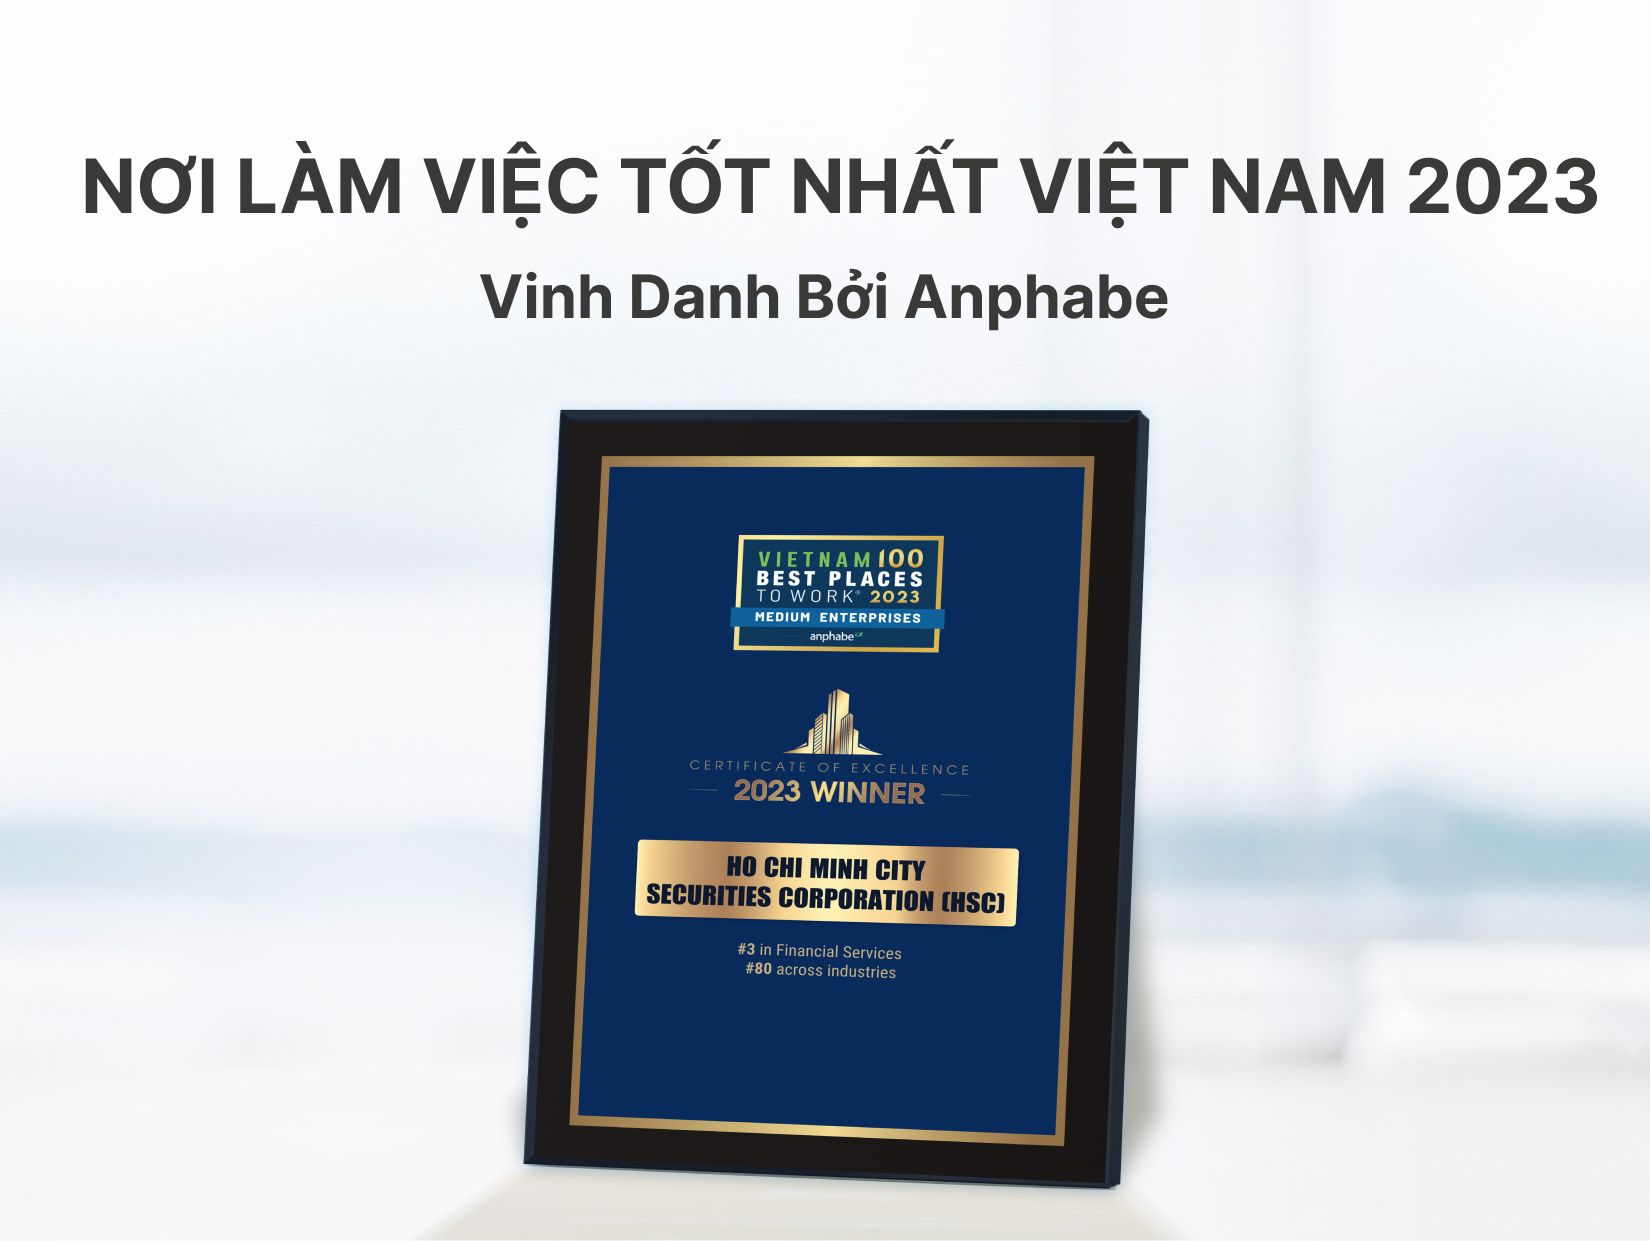 HSC - “Nơi làm việc tốt nhất Việt Nam 2023” – Vinh danh bởi Anphabe